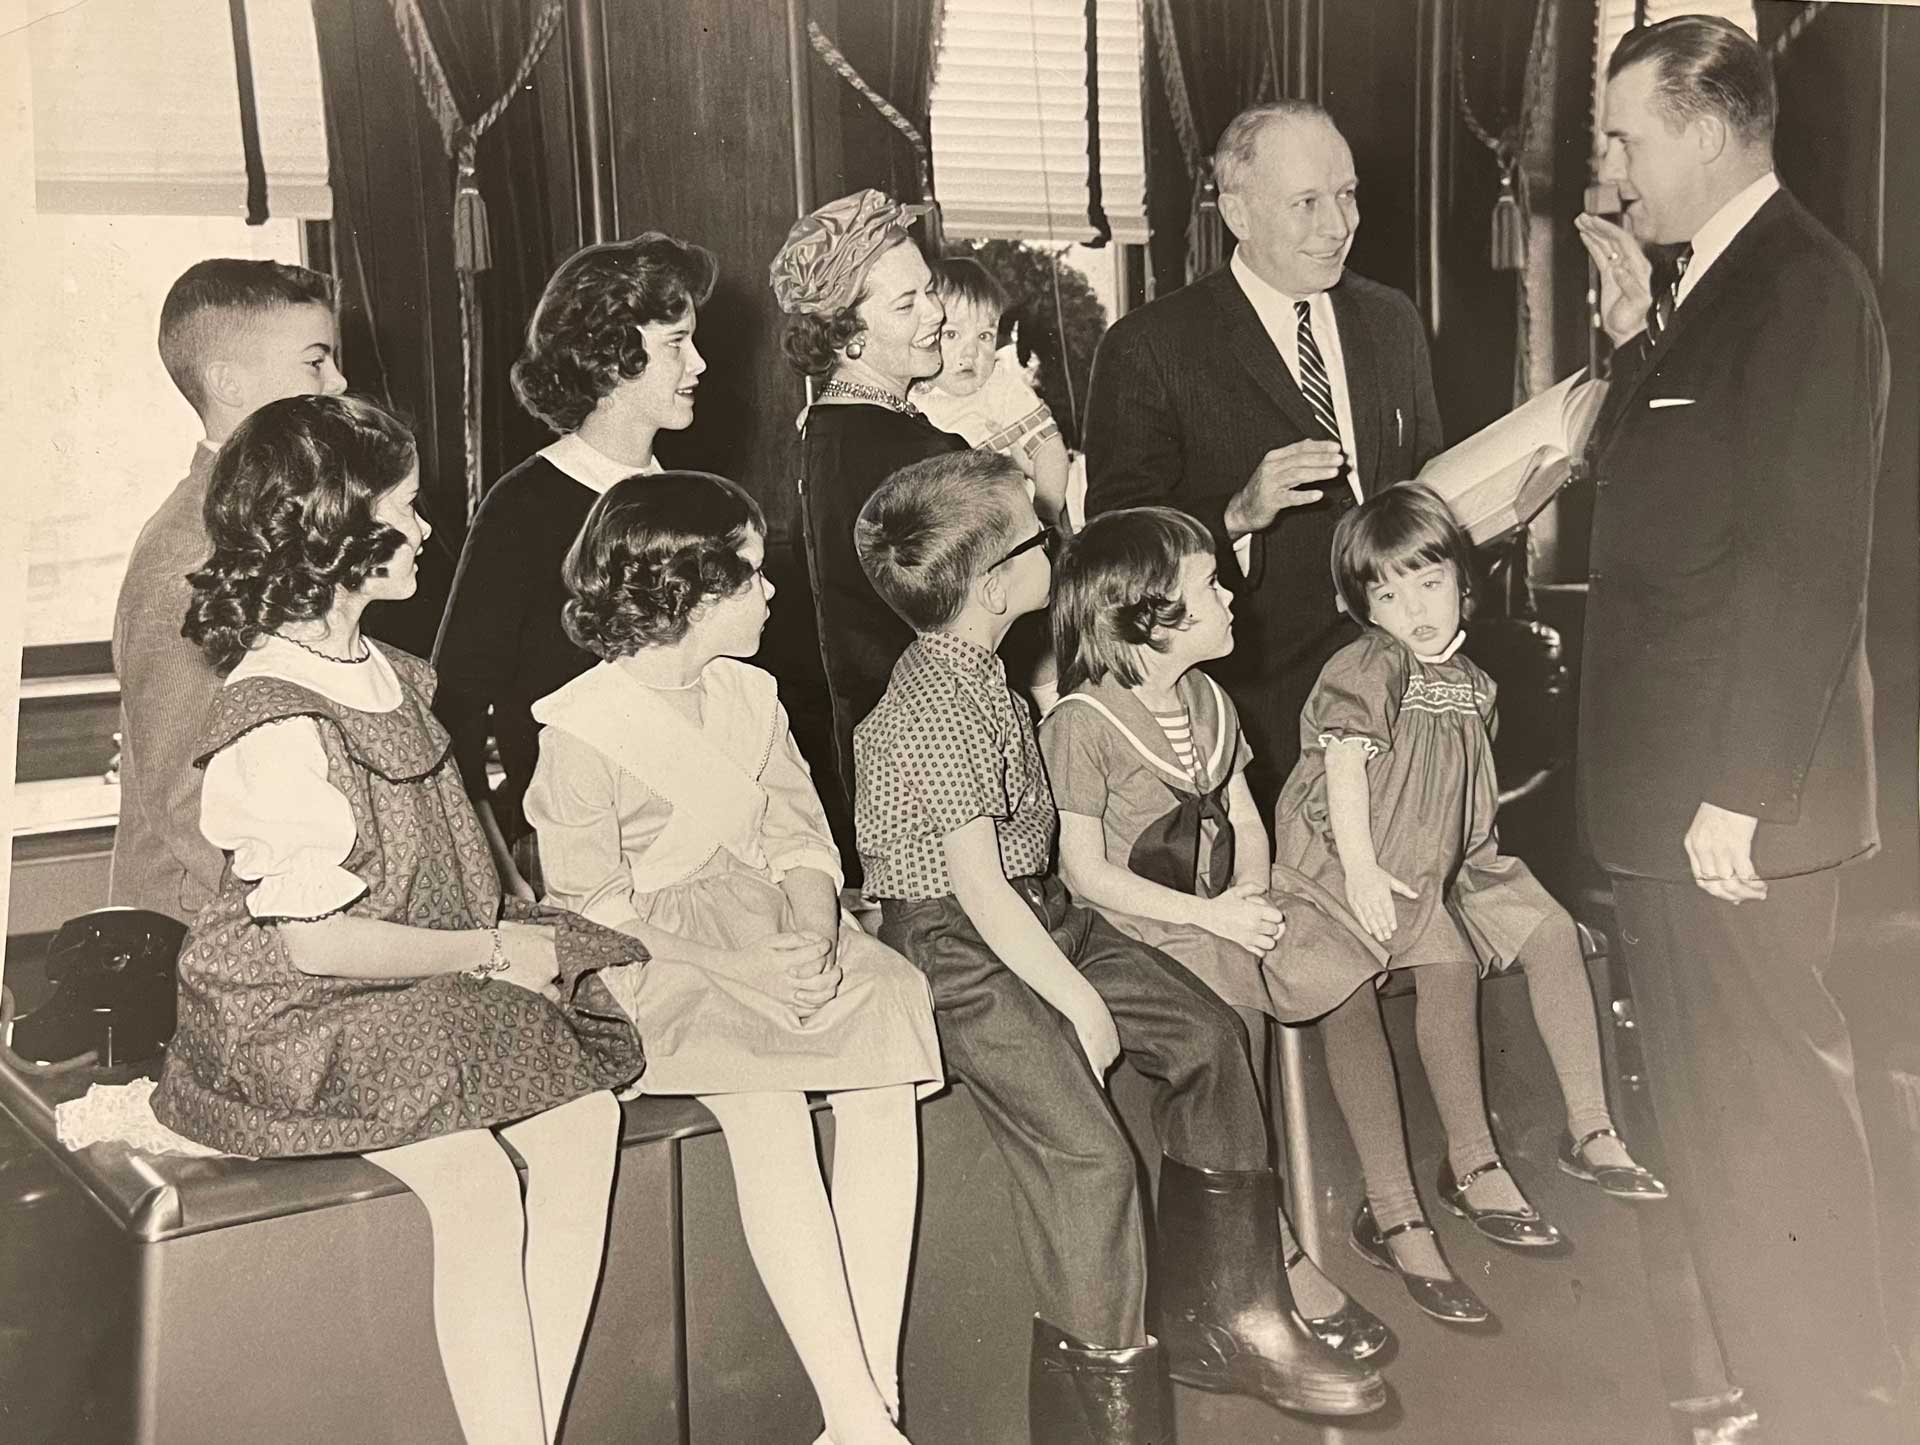 The Hon. John W. Rehfuss speaking to some children